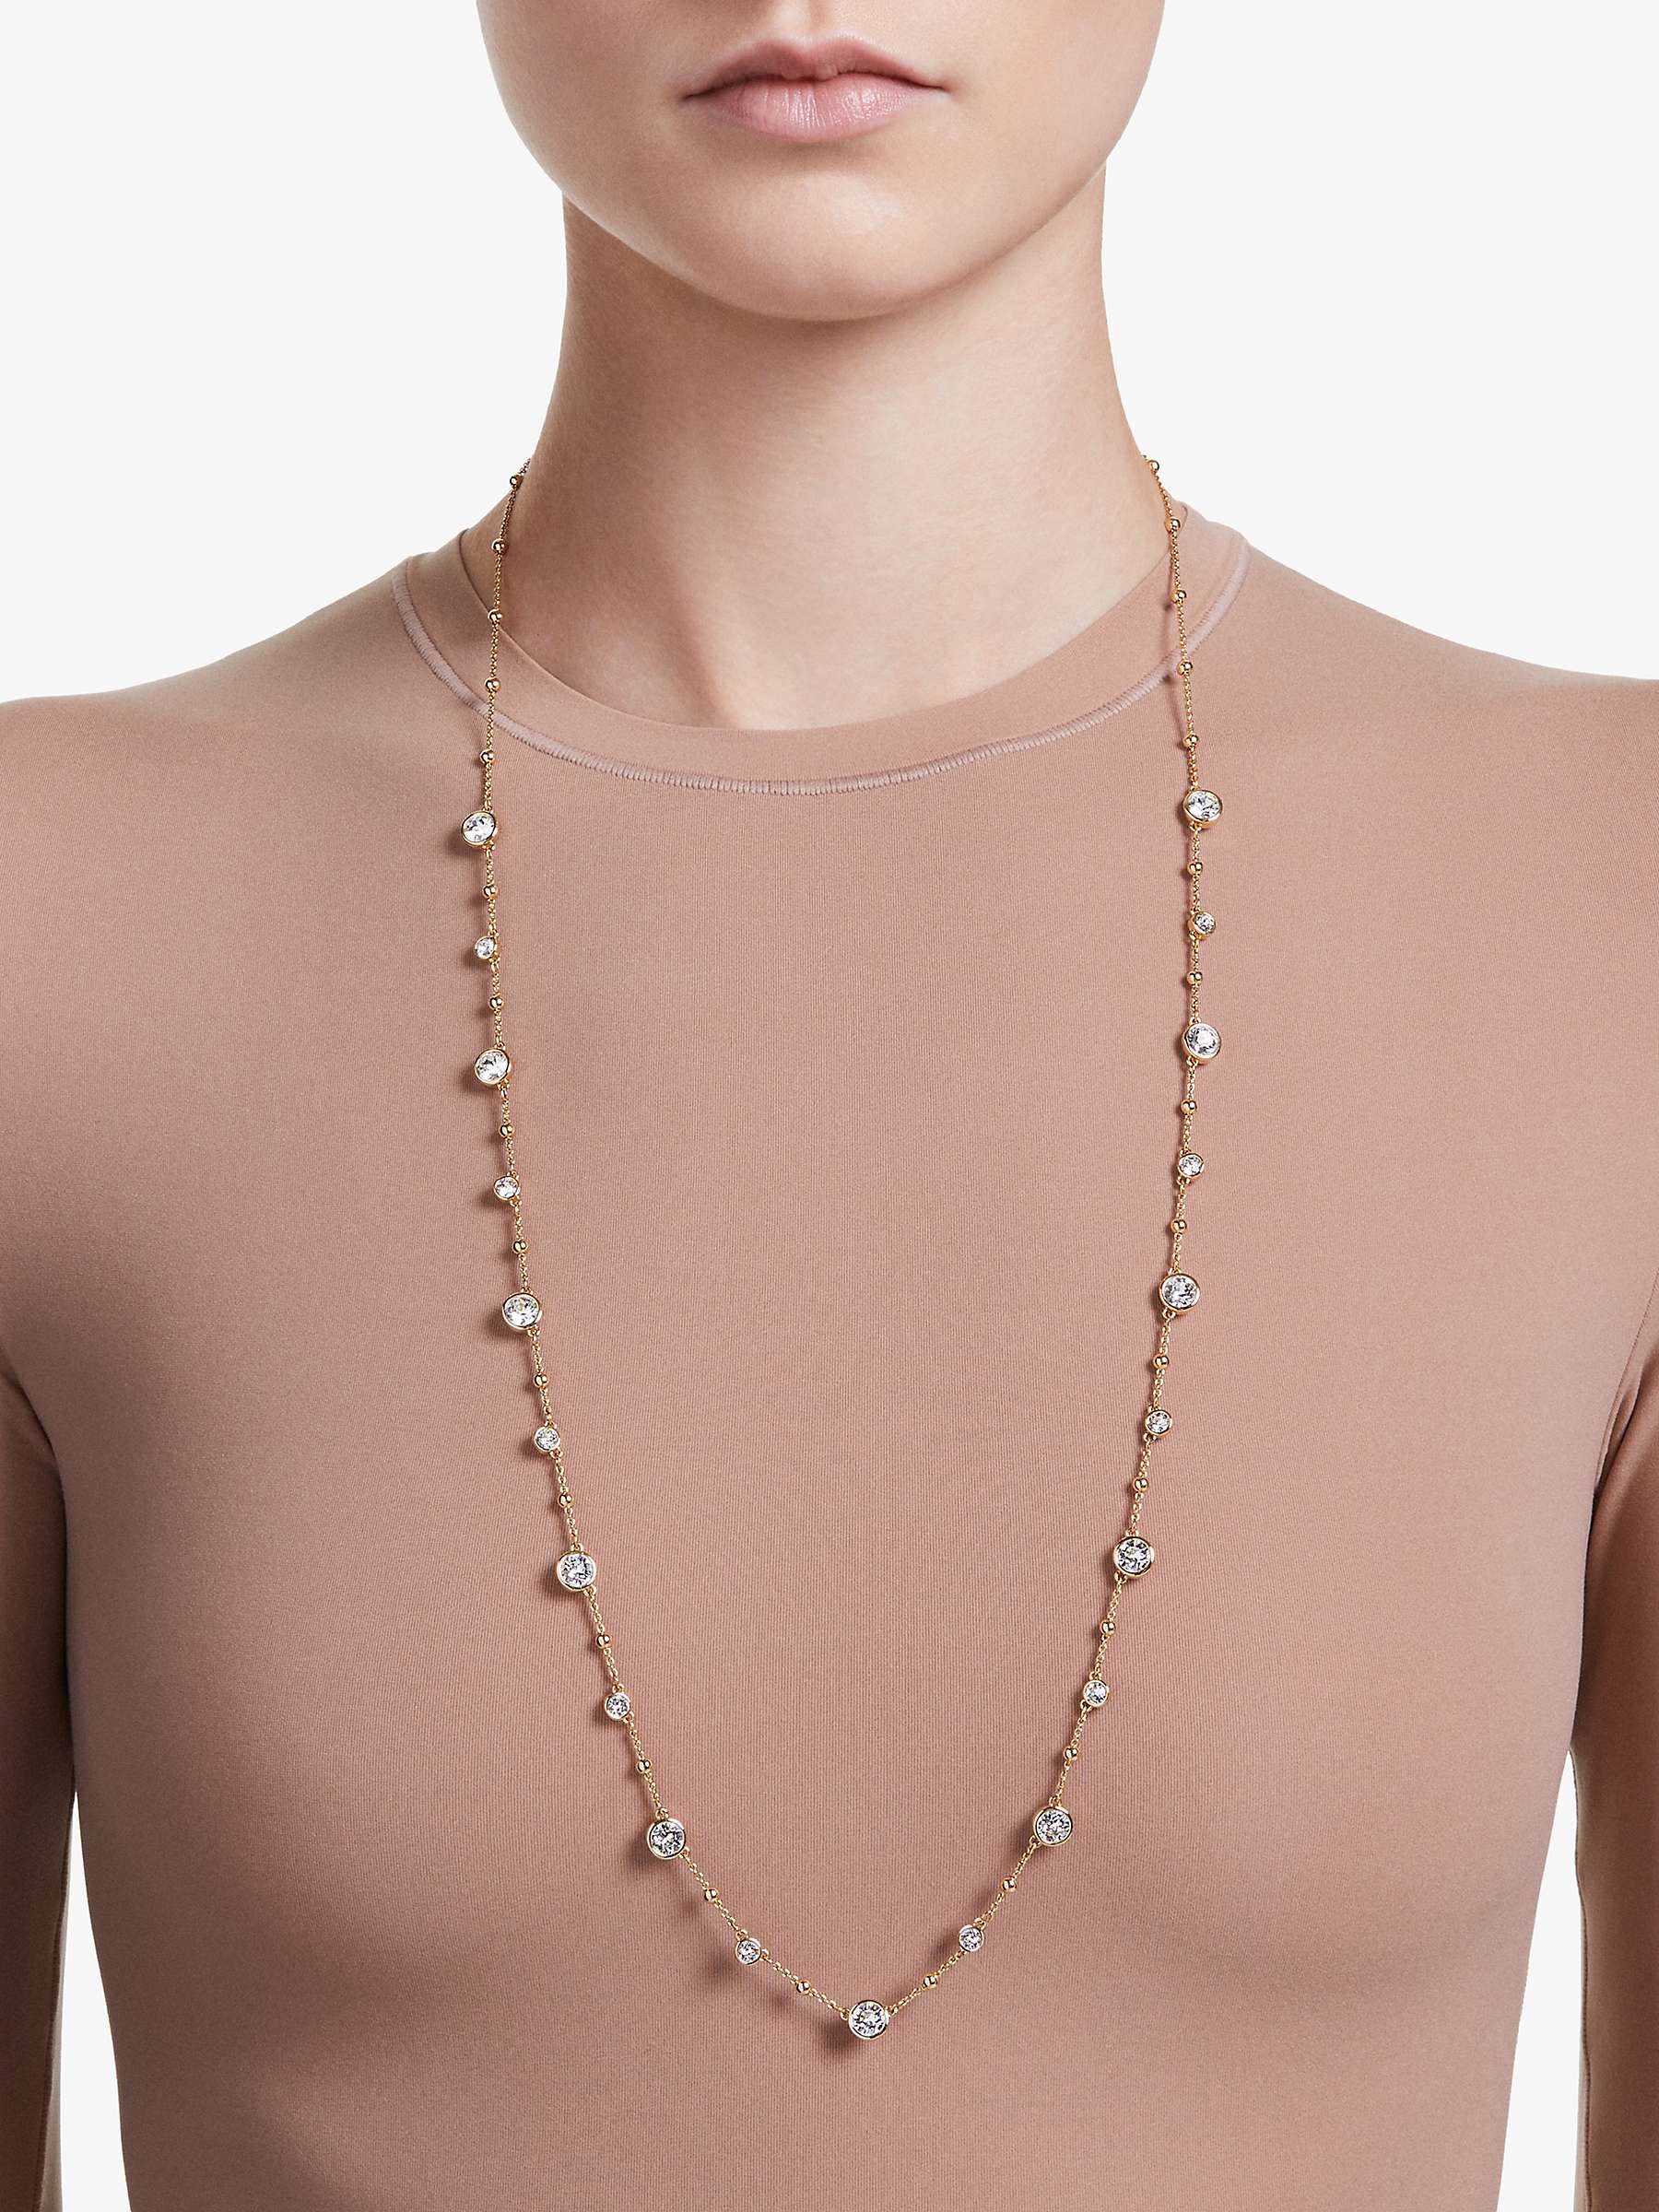 Buy Swarovski Imber Long Crystal Necklace, Gold Online at johnlewis.com